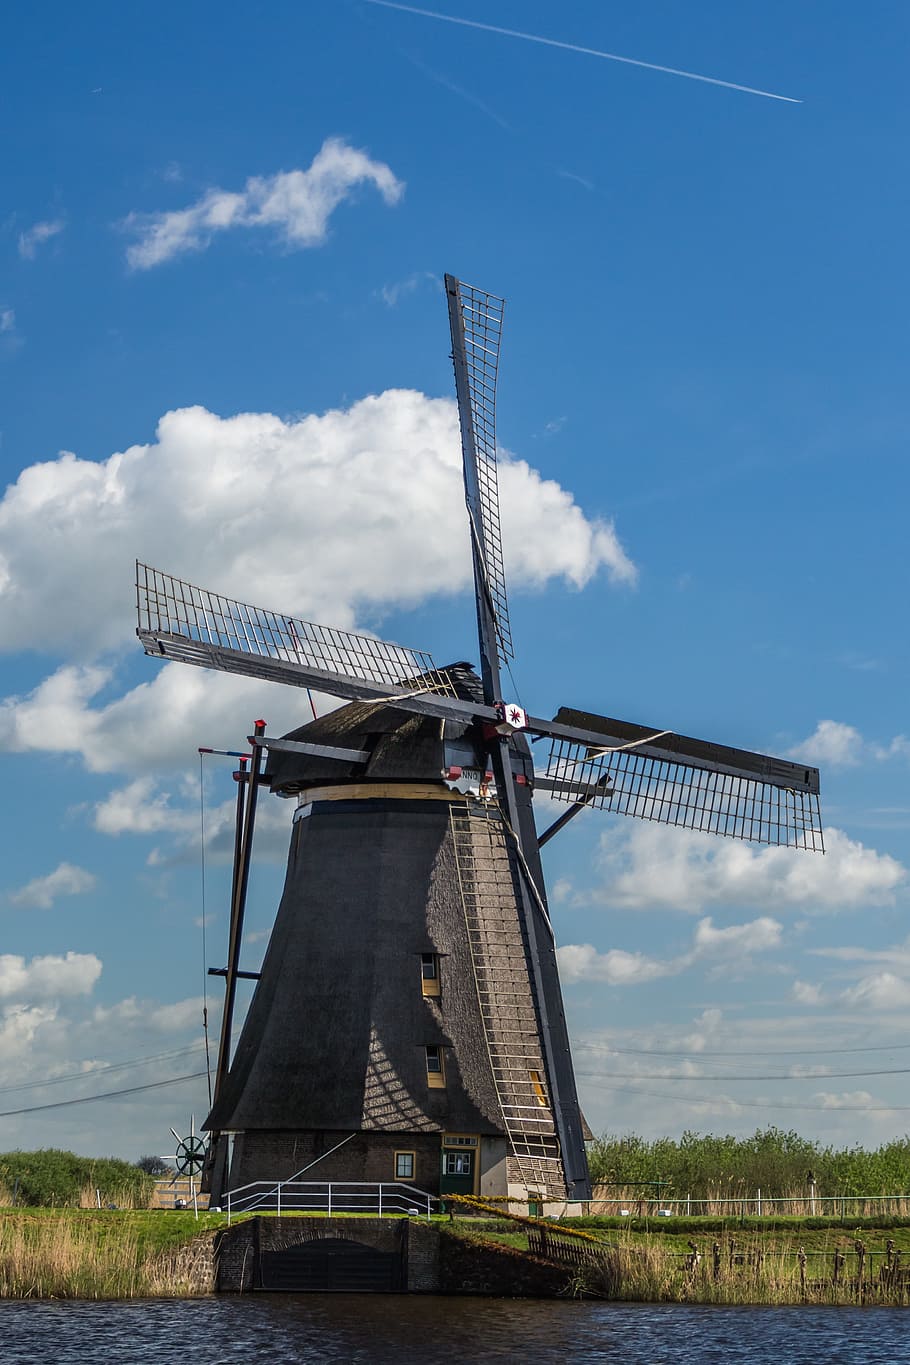 gris, cuerpo, agua, molino de viento, Países Bajos, kinderdijk, energía alternativa, conservación del medio ambiente, energía eólica, turbina eólica